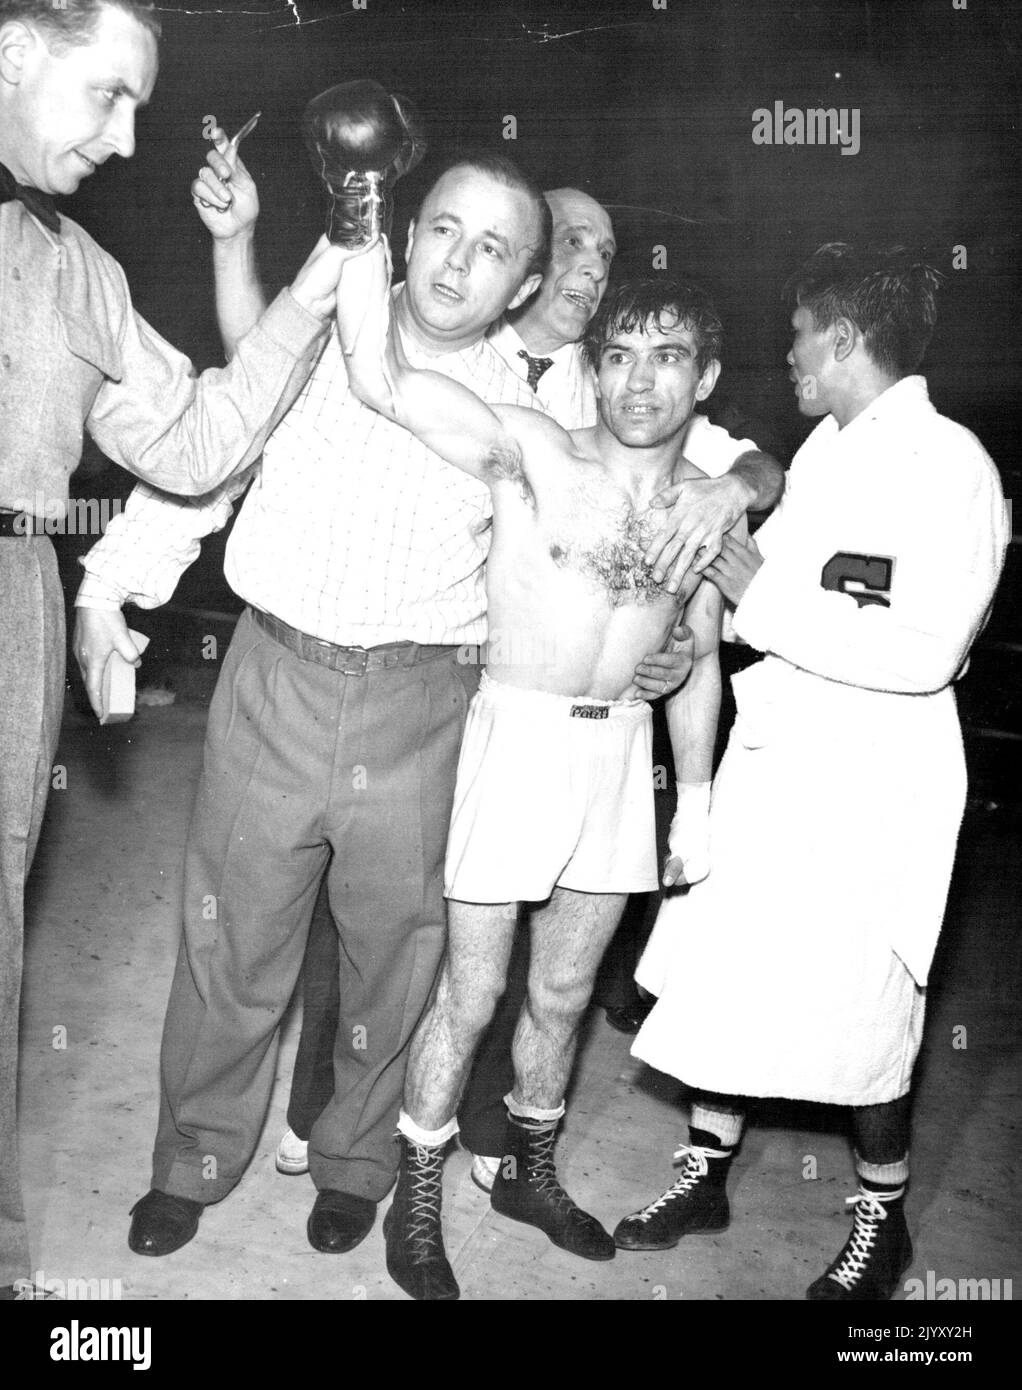 Neuer Flyweight-Champion -- der Argentinier Pascual Perez hat nach dem Sieg bei der Weltmeisterschaft im Fliegengewicht in einer einstimmigen Entscheidung über den japanischen Yoshio Shirai (rechts) in einem 15-Runden-Spiel in Tokio (26.. November) die Hand angehoben. Schiedsrichter Jack Sullivan (links) hält die Hand des Gewinners hoch, während Perez-Trainer, wie auch der Trainer von Perez, Frau Berger, und Manager Lozaro Kooi (zweiter von links) zugegen sind. 29. November 1954. (Foto von United Press Photo). Stockfoto